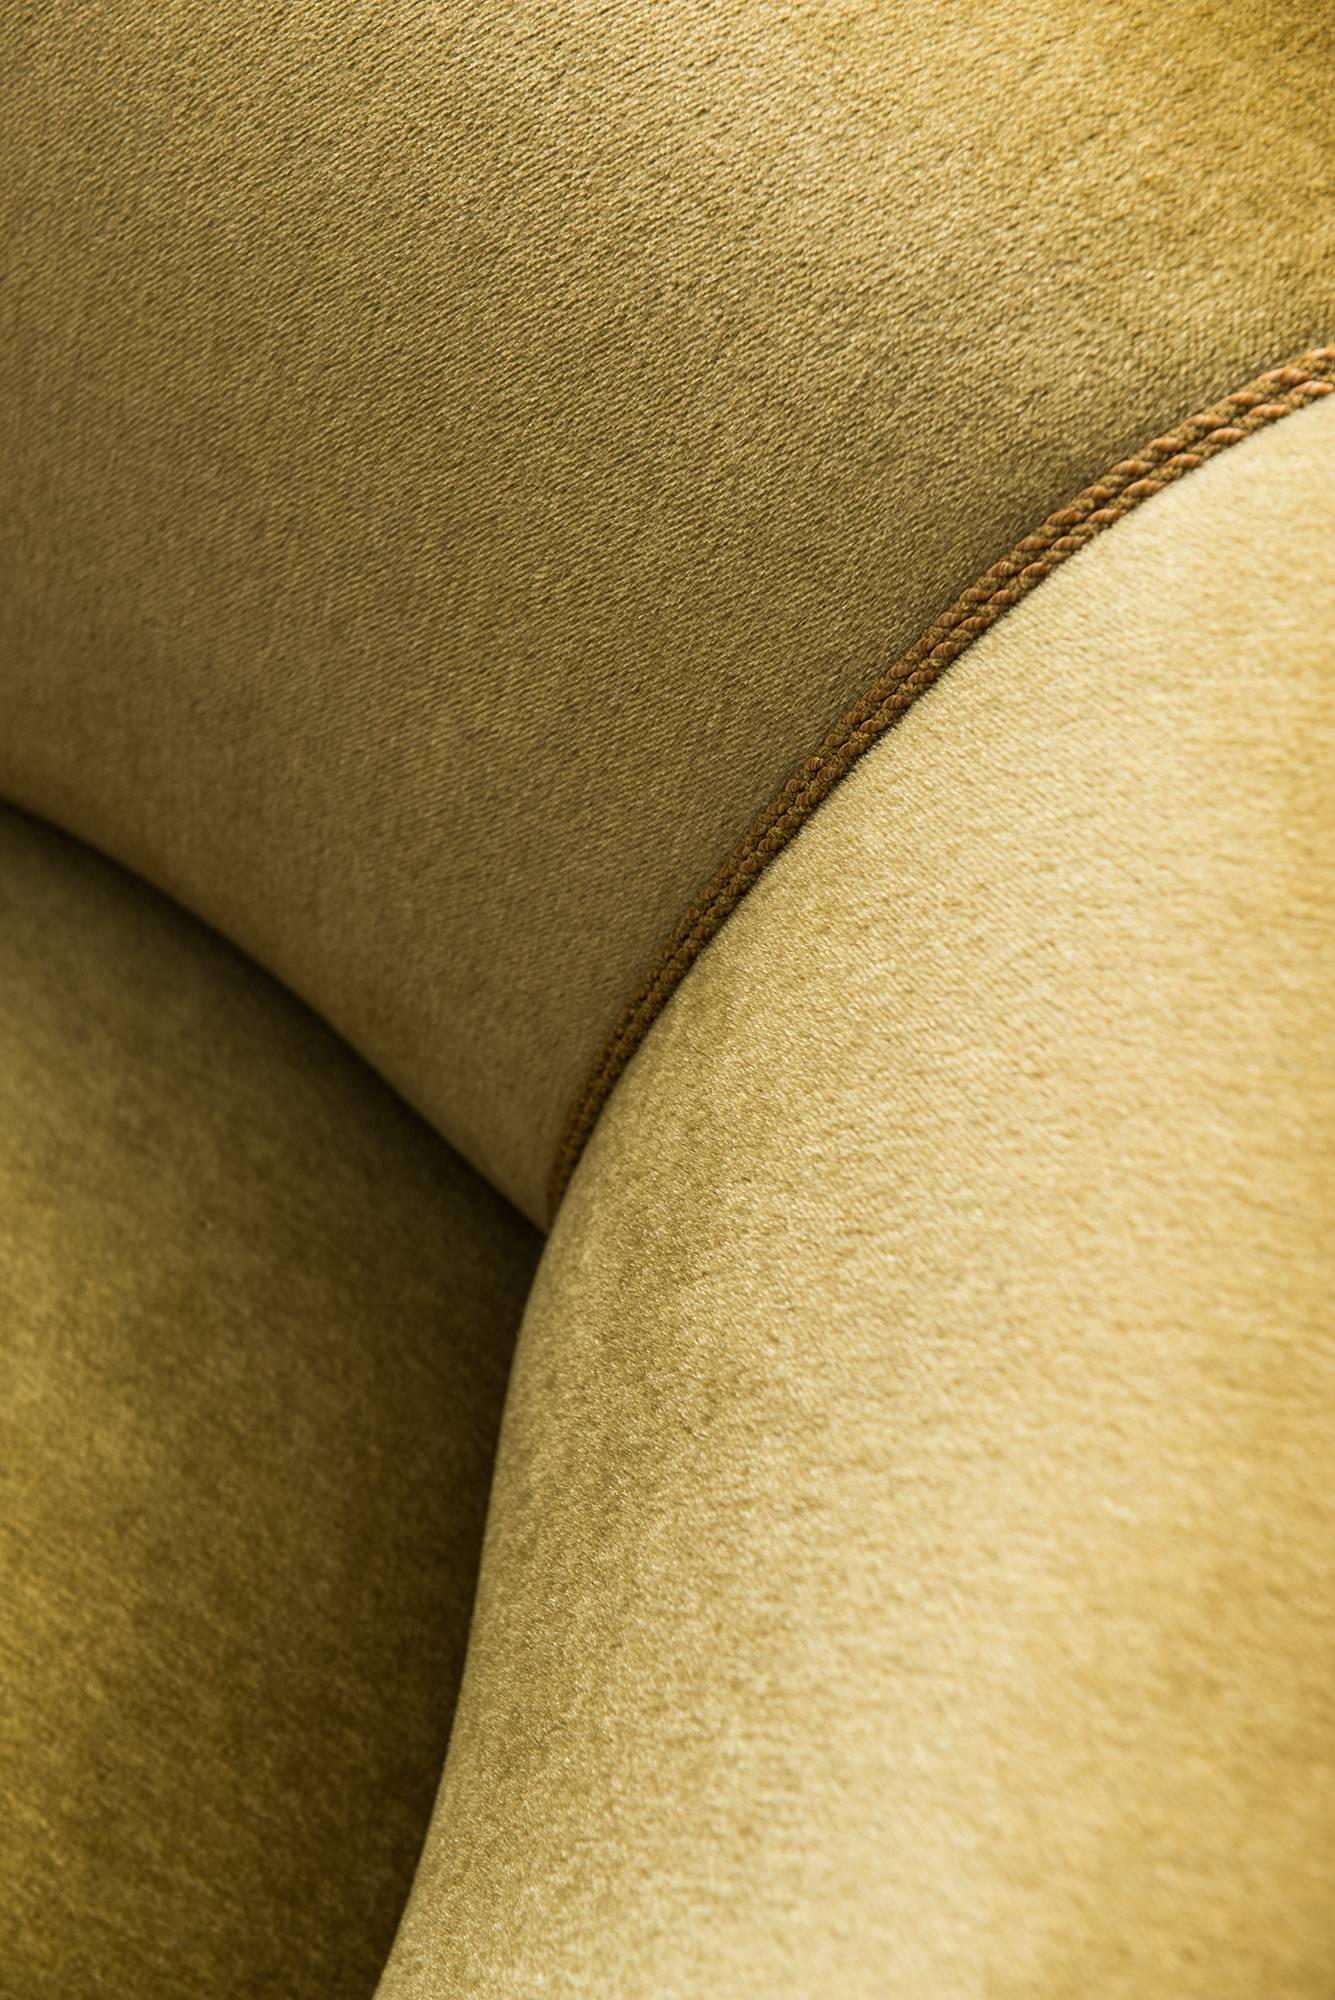 Scandinavian Modern Large Curved Sofa in Green / Yellow Velvet Produced in Denmark